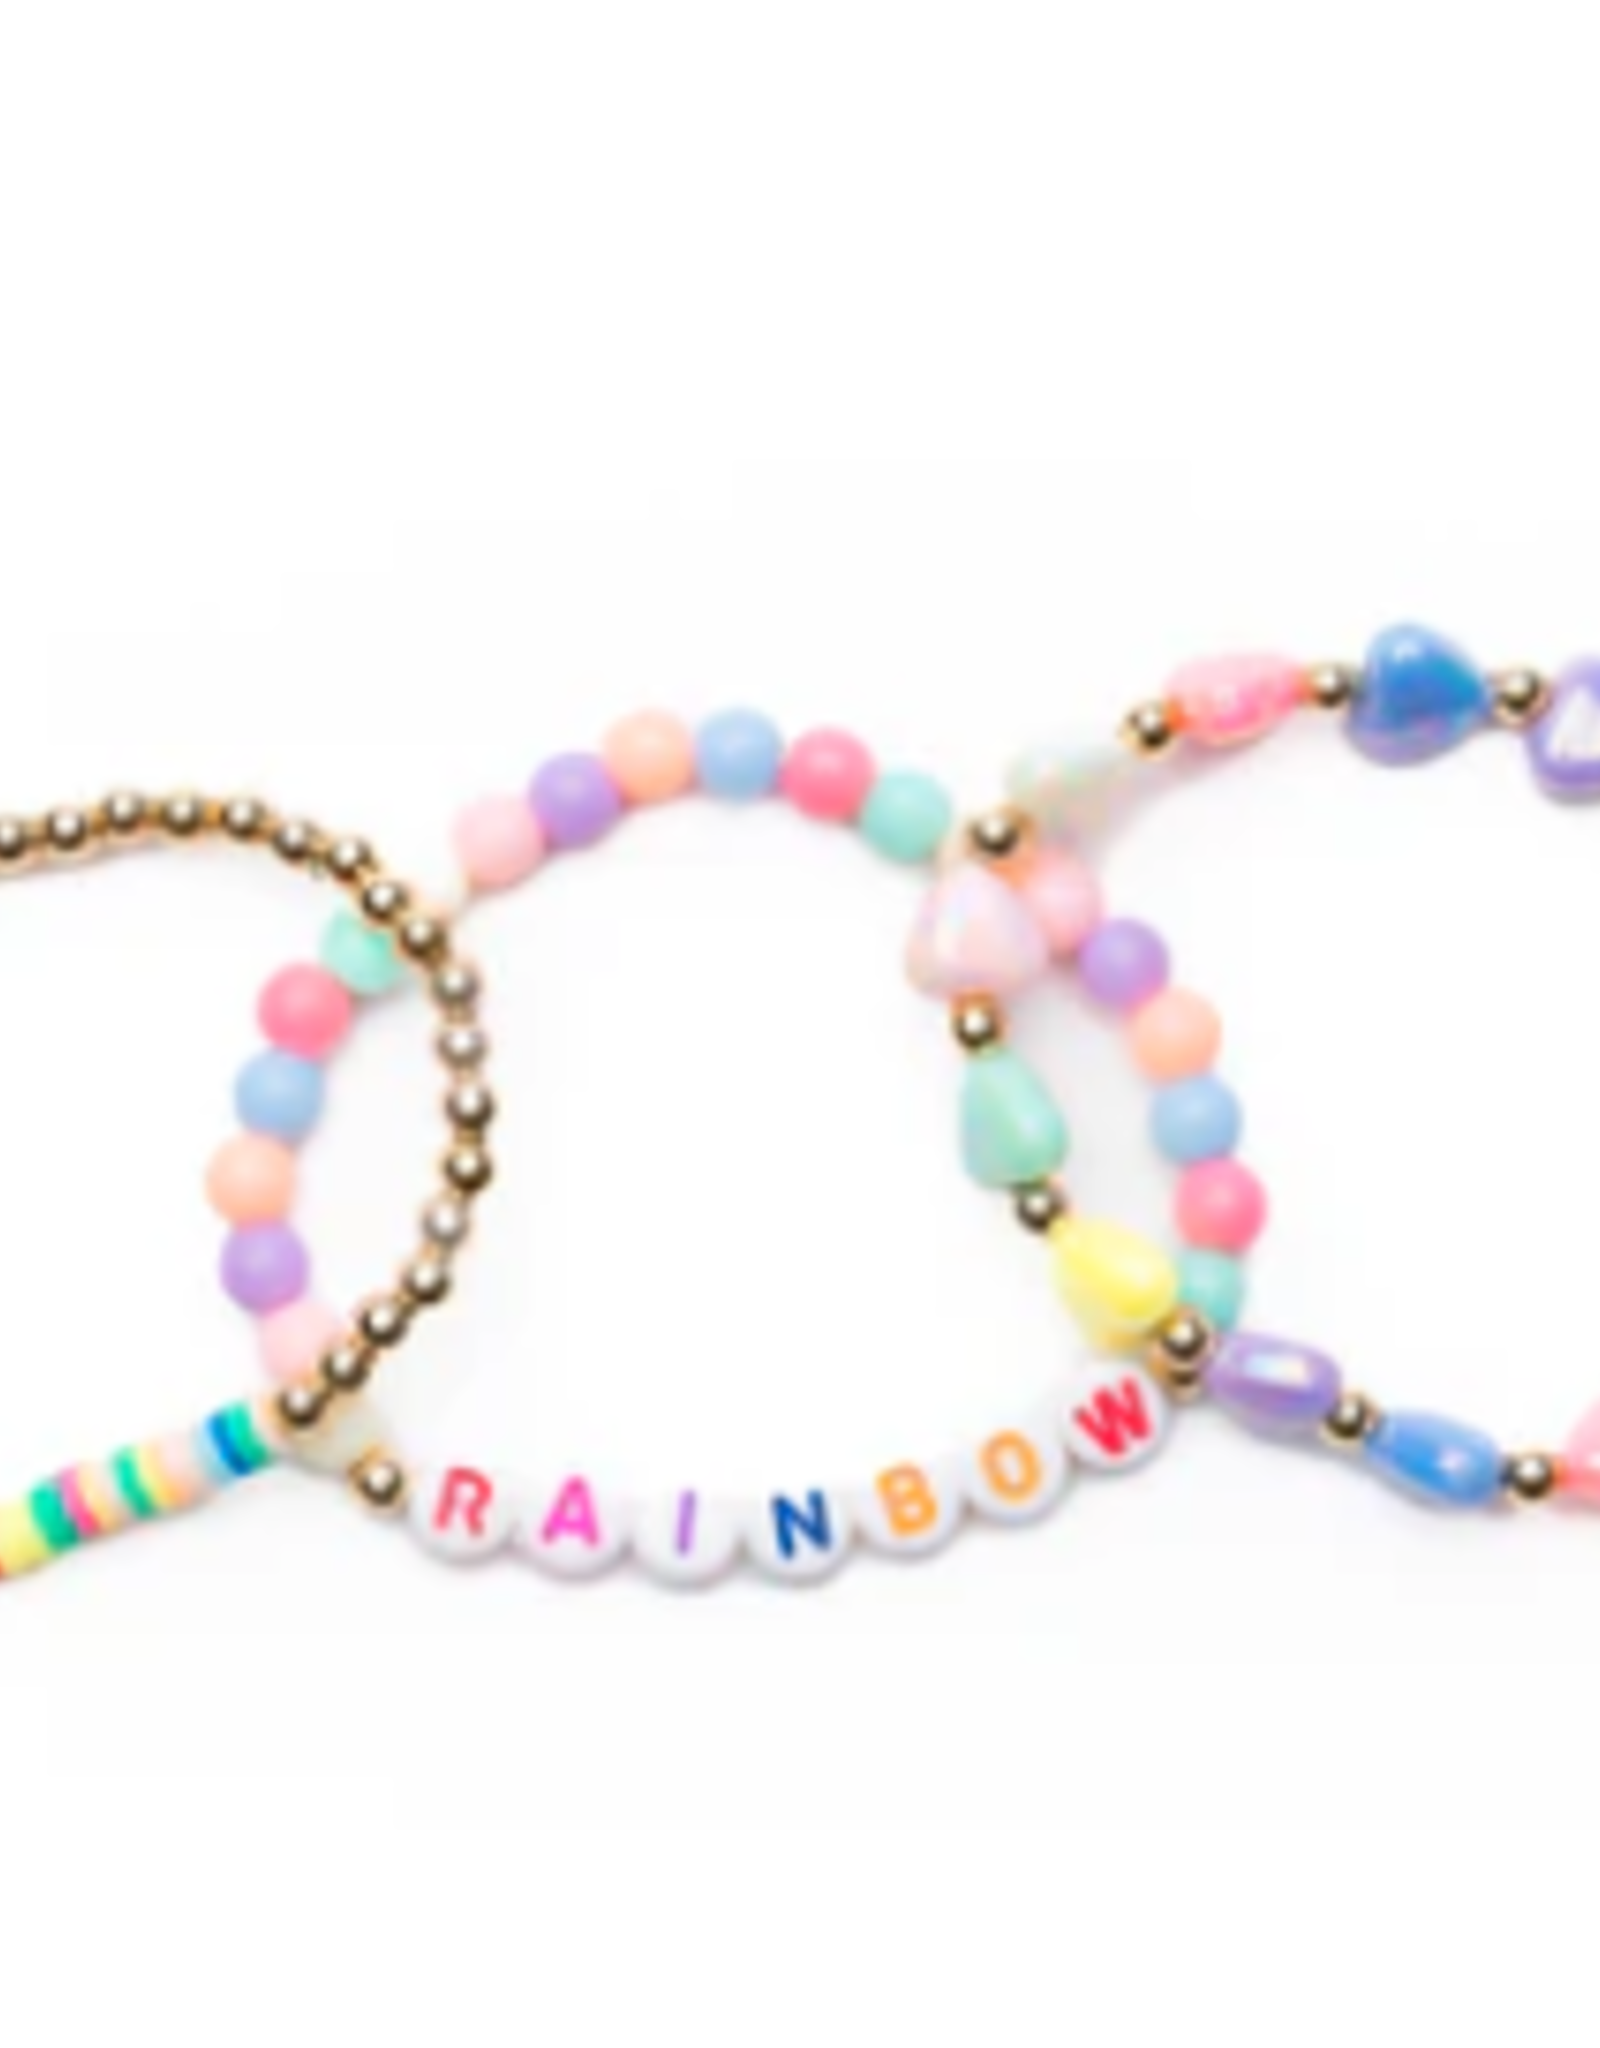 Great Pretenders Rainbow Smiles  bracelet 3pc